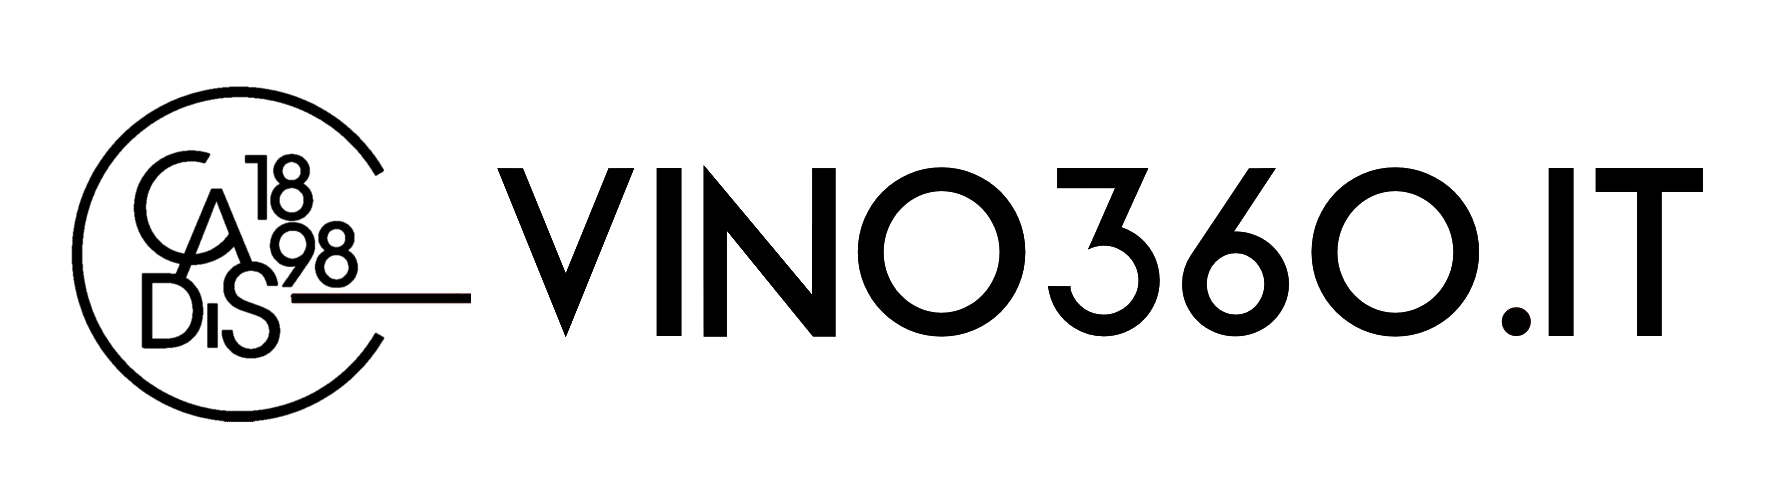 VINO360 | VENDITA VINI ONLINE Logo